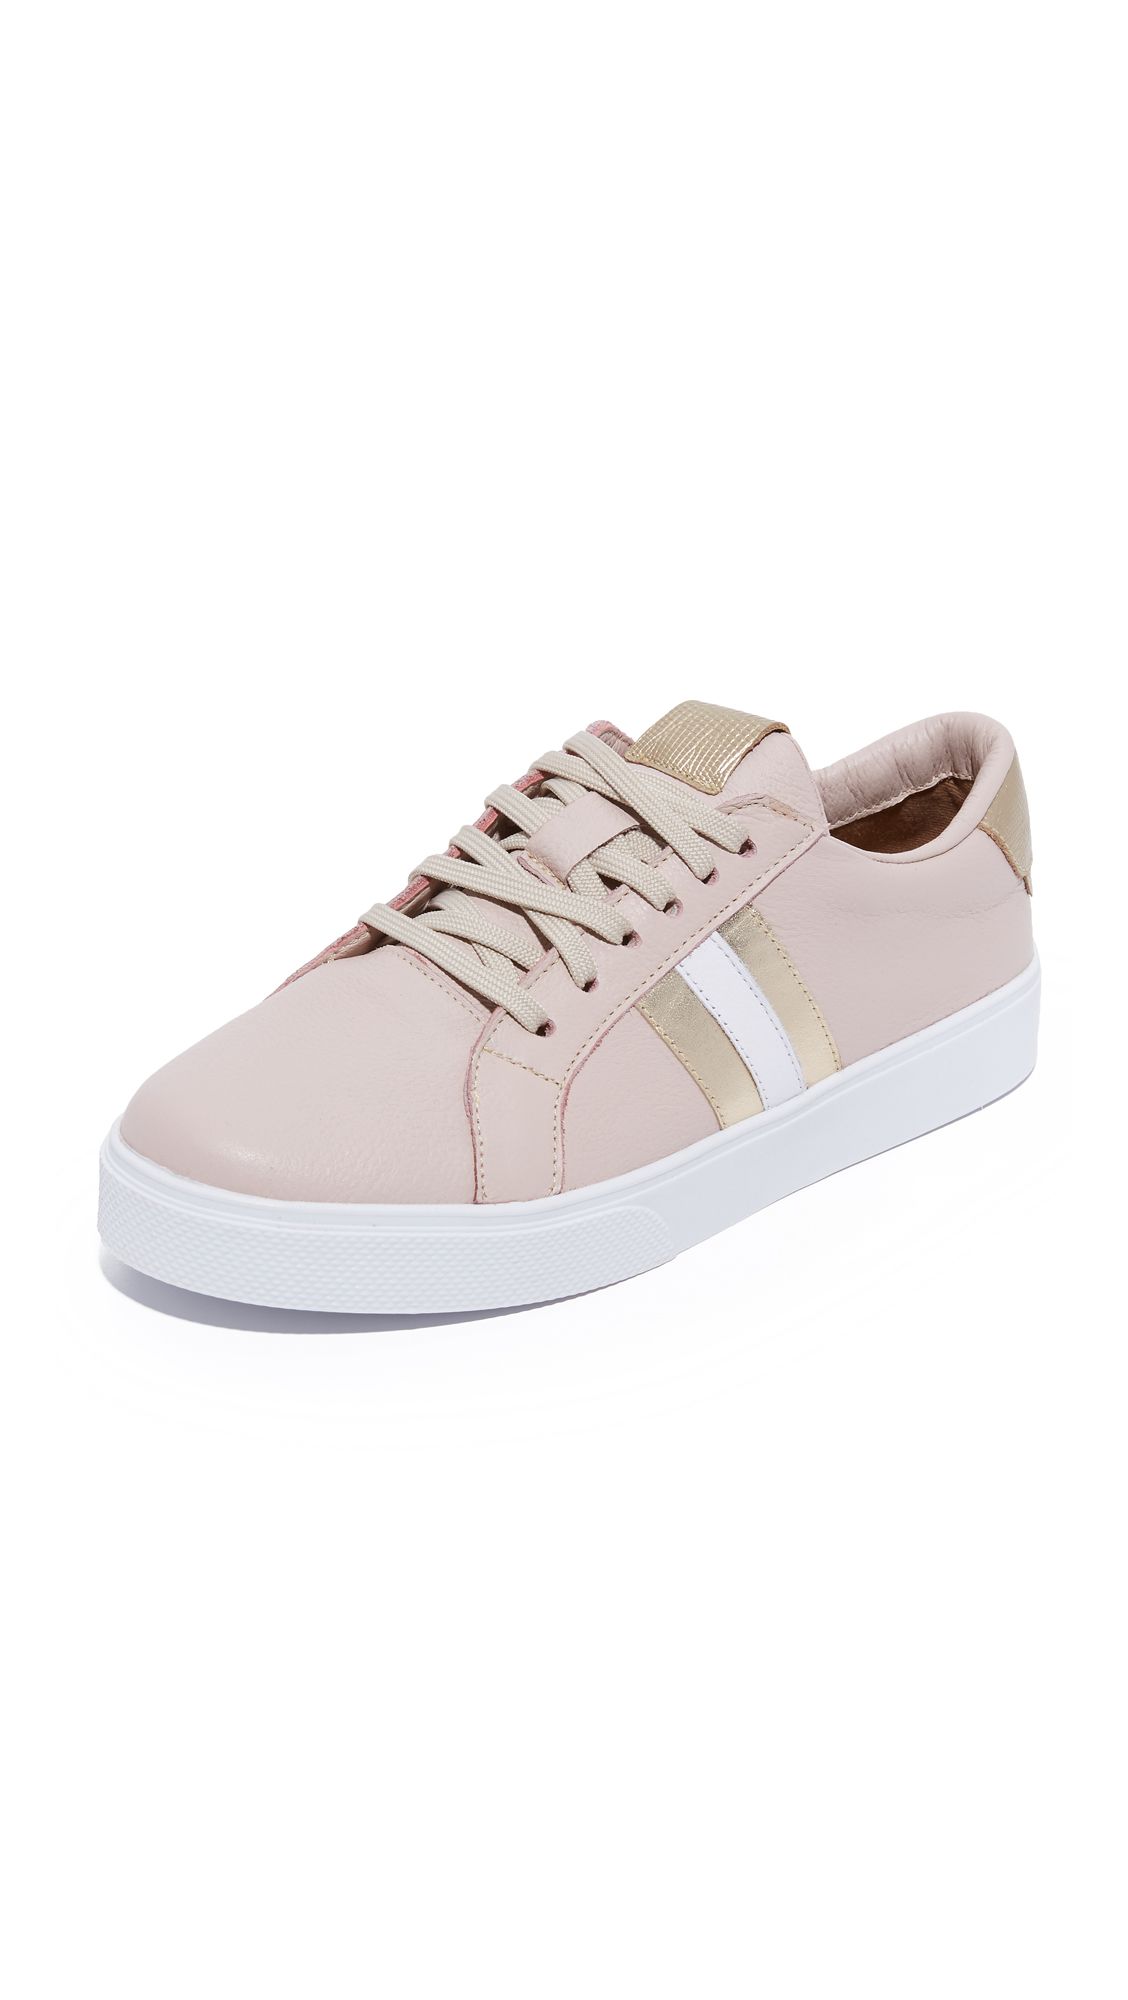 Tatacoa Sneakers | Shopbop